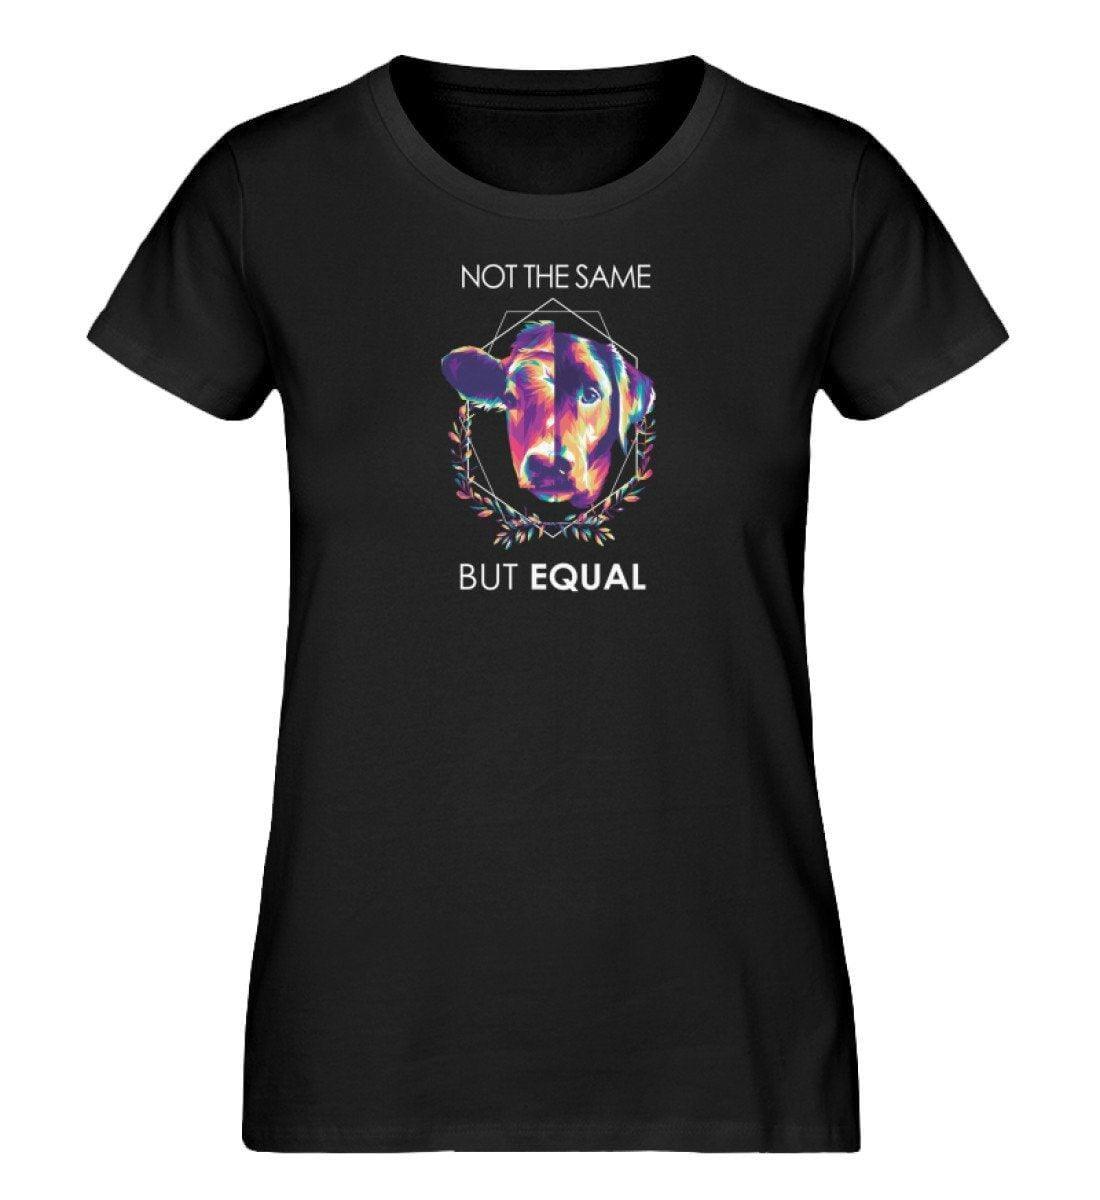 Not the same but equal - Damen Organic Shirt - Team Vegan © vegan t shirt